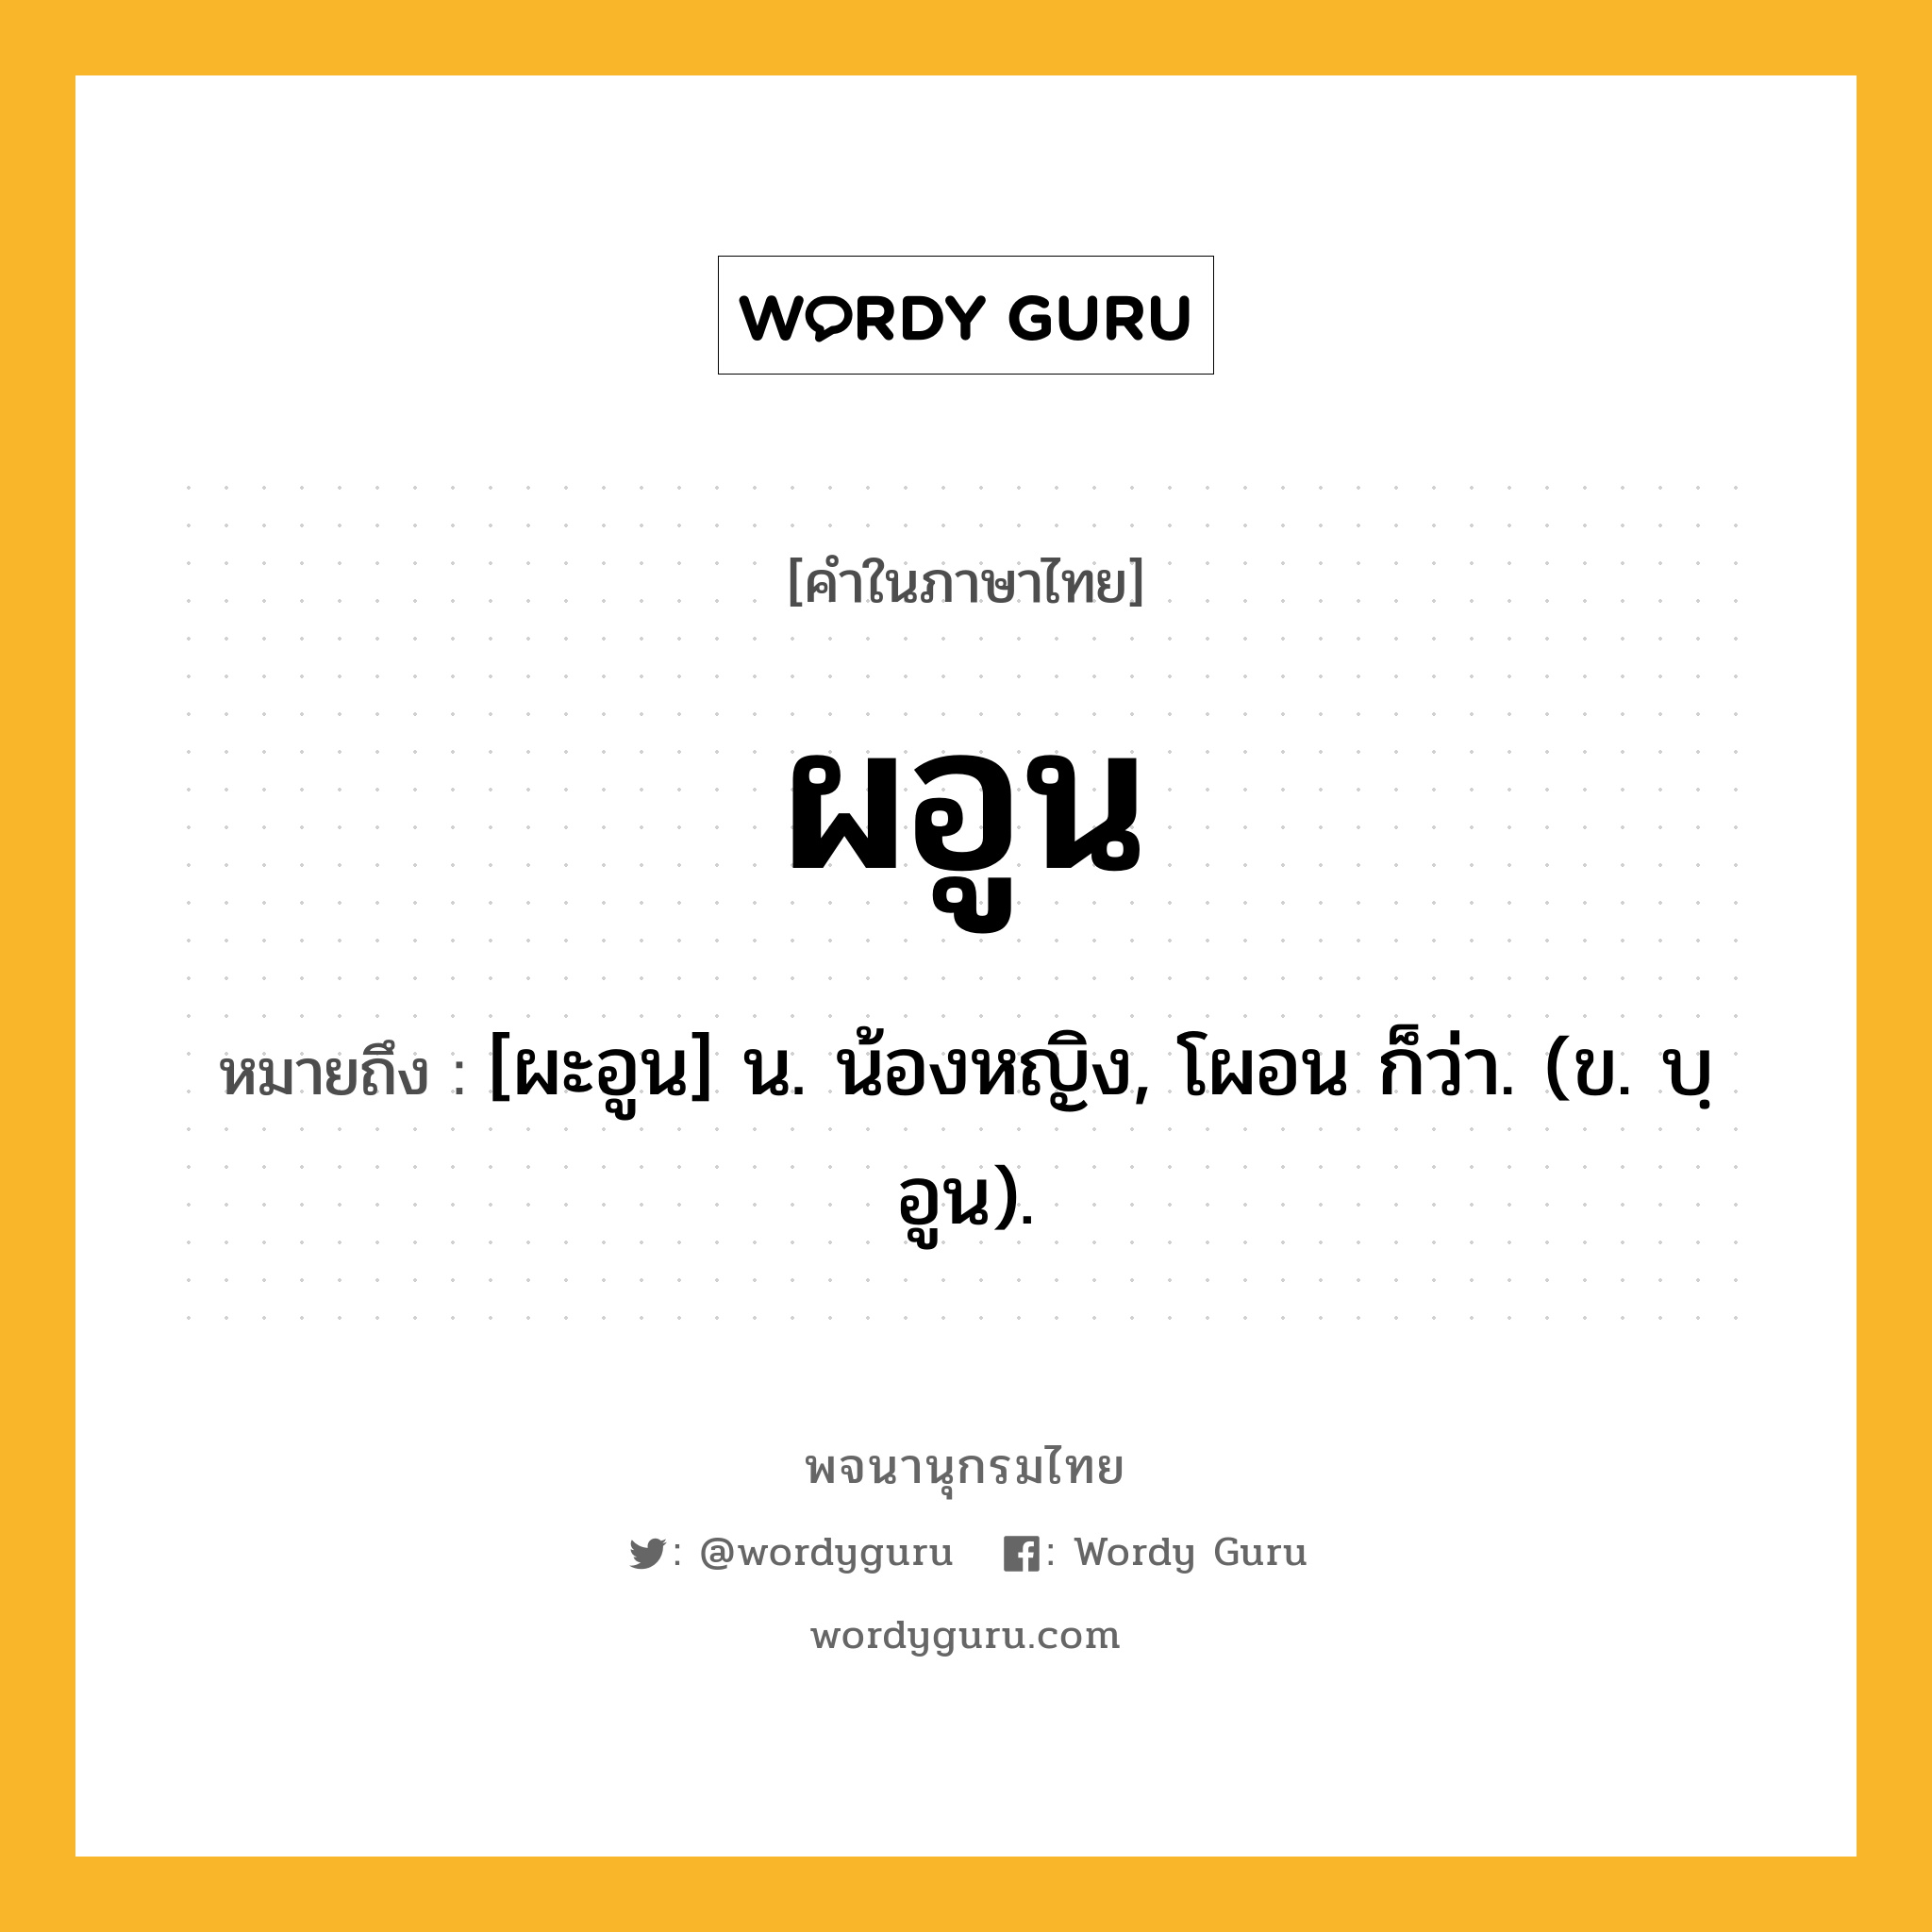 ผอูน หมายถึงอะไร?, คำในภาษาไทย ผอูน หมายถึง [ผะอูน] น. น้องหญิง, โผอน ก็ว่า. (ข. บฺอูน).